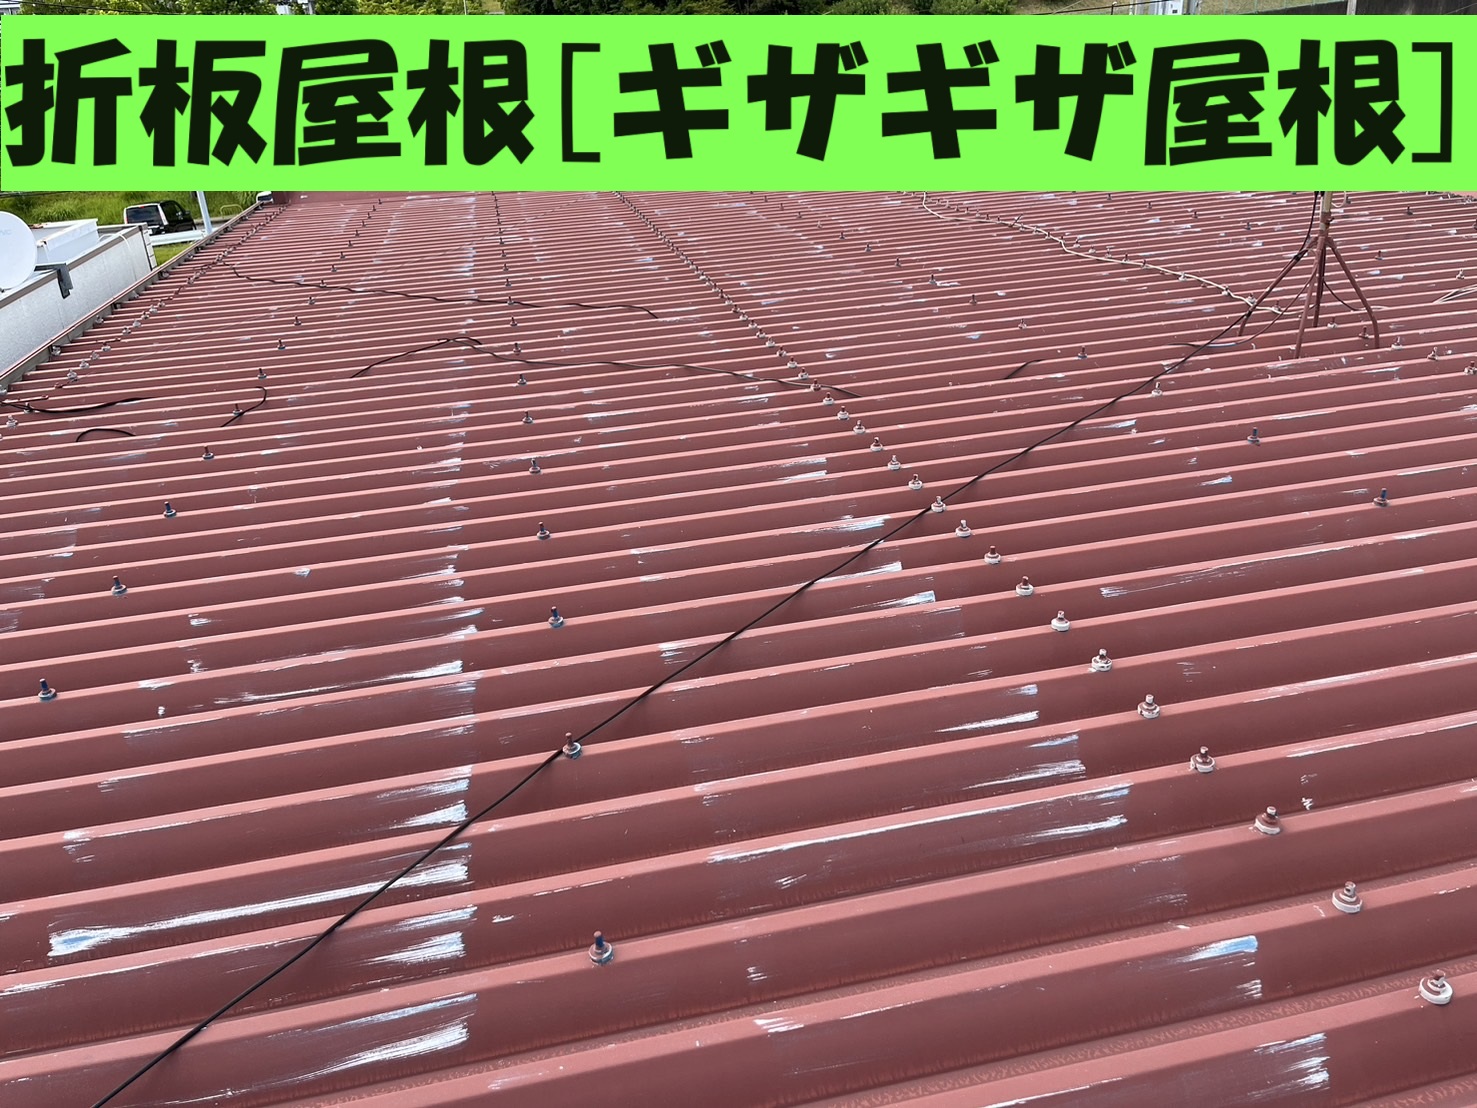 木曽岬町にて折板屋根のギザギザ屋根より雨漏りした店舗